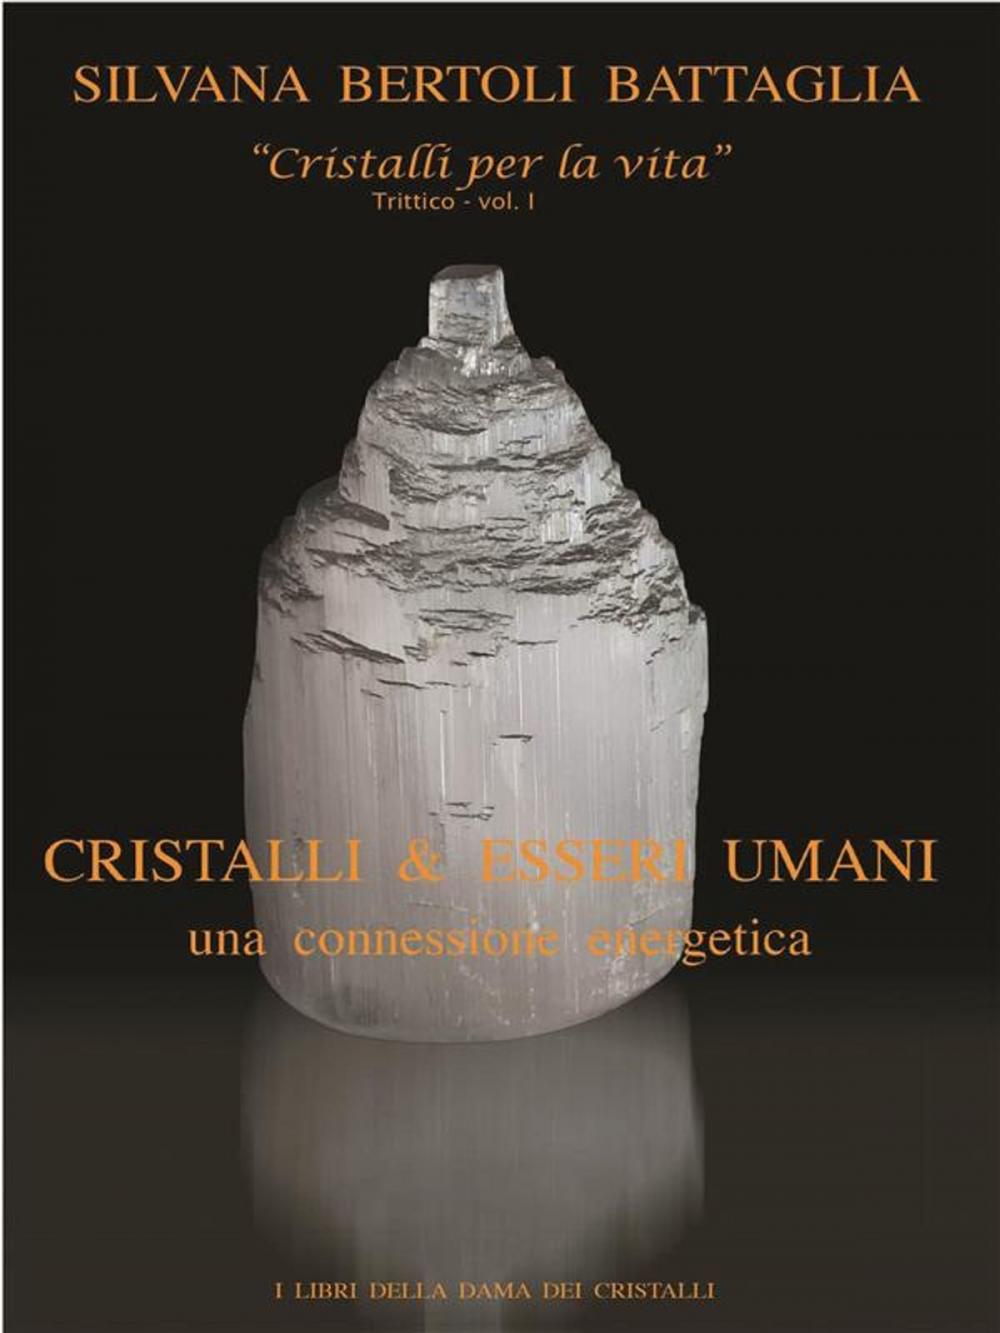 Big bigCover of "Cristalli & esseri umani. Una connessione energetica" - Vol. 1 del trittico "Cristalli per la vita"